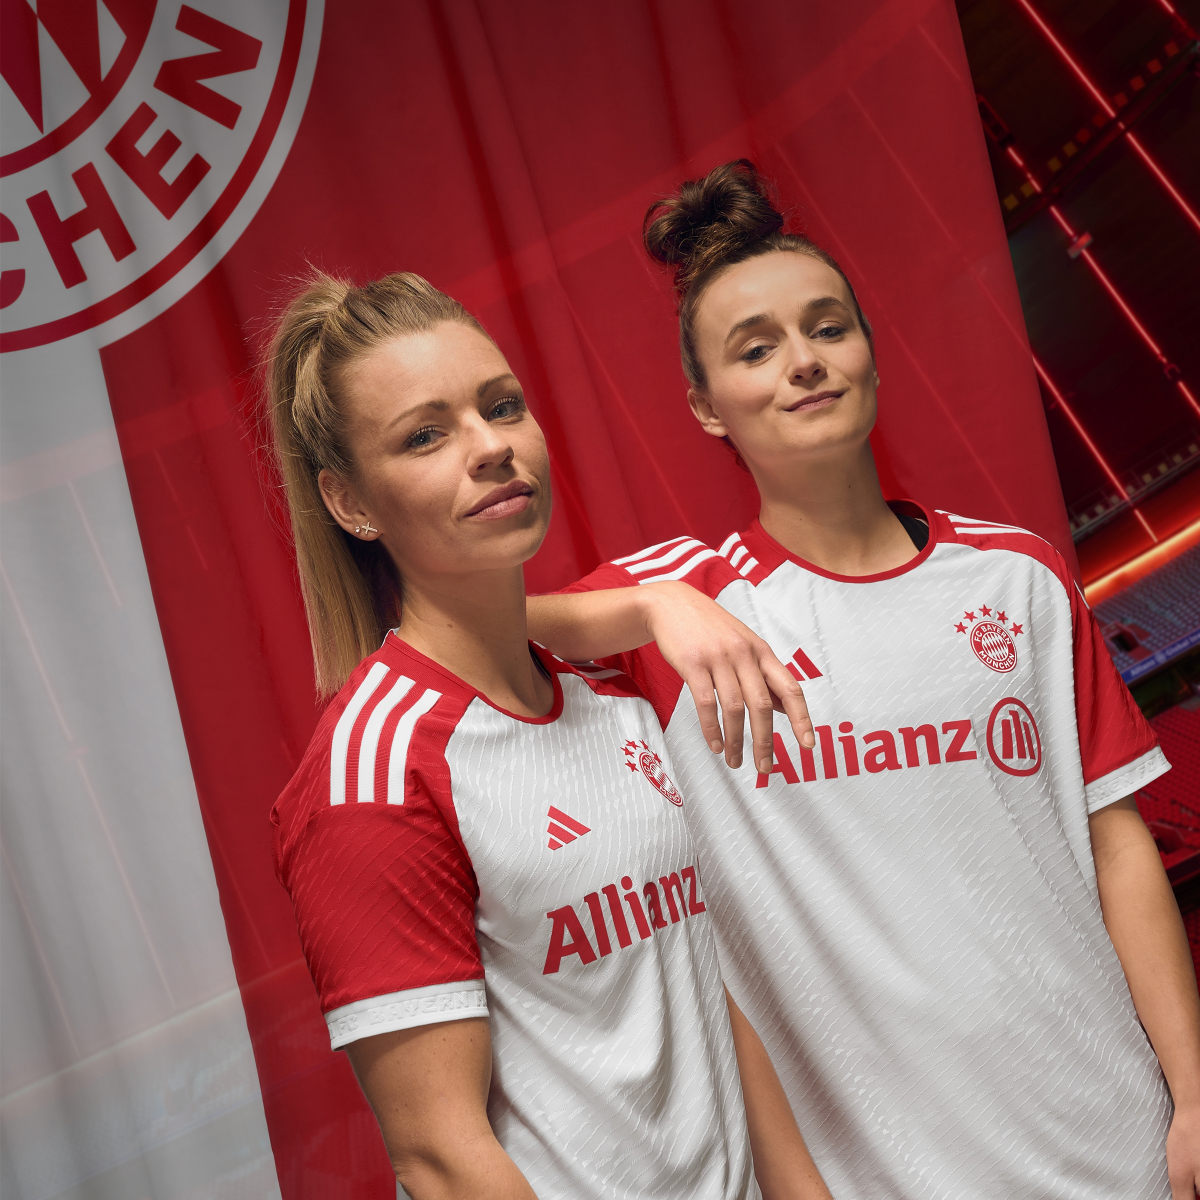 Adidas Camisola Principal 23/24 da Equipa Feminina do FC Bayern München. 9